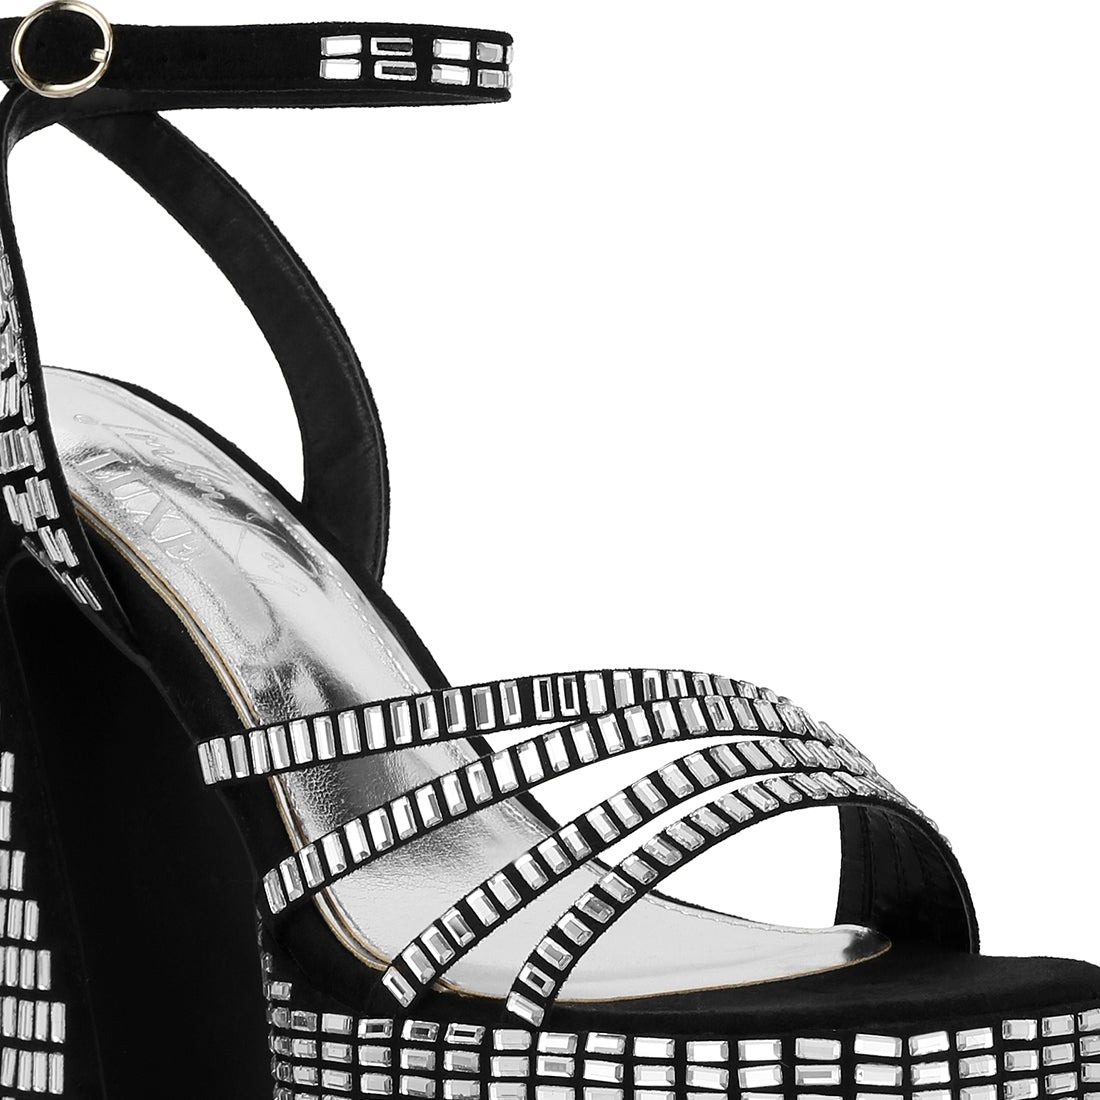 mirror embellished flare block heel sandals#color_black